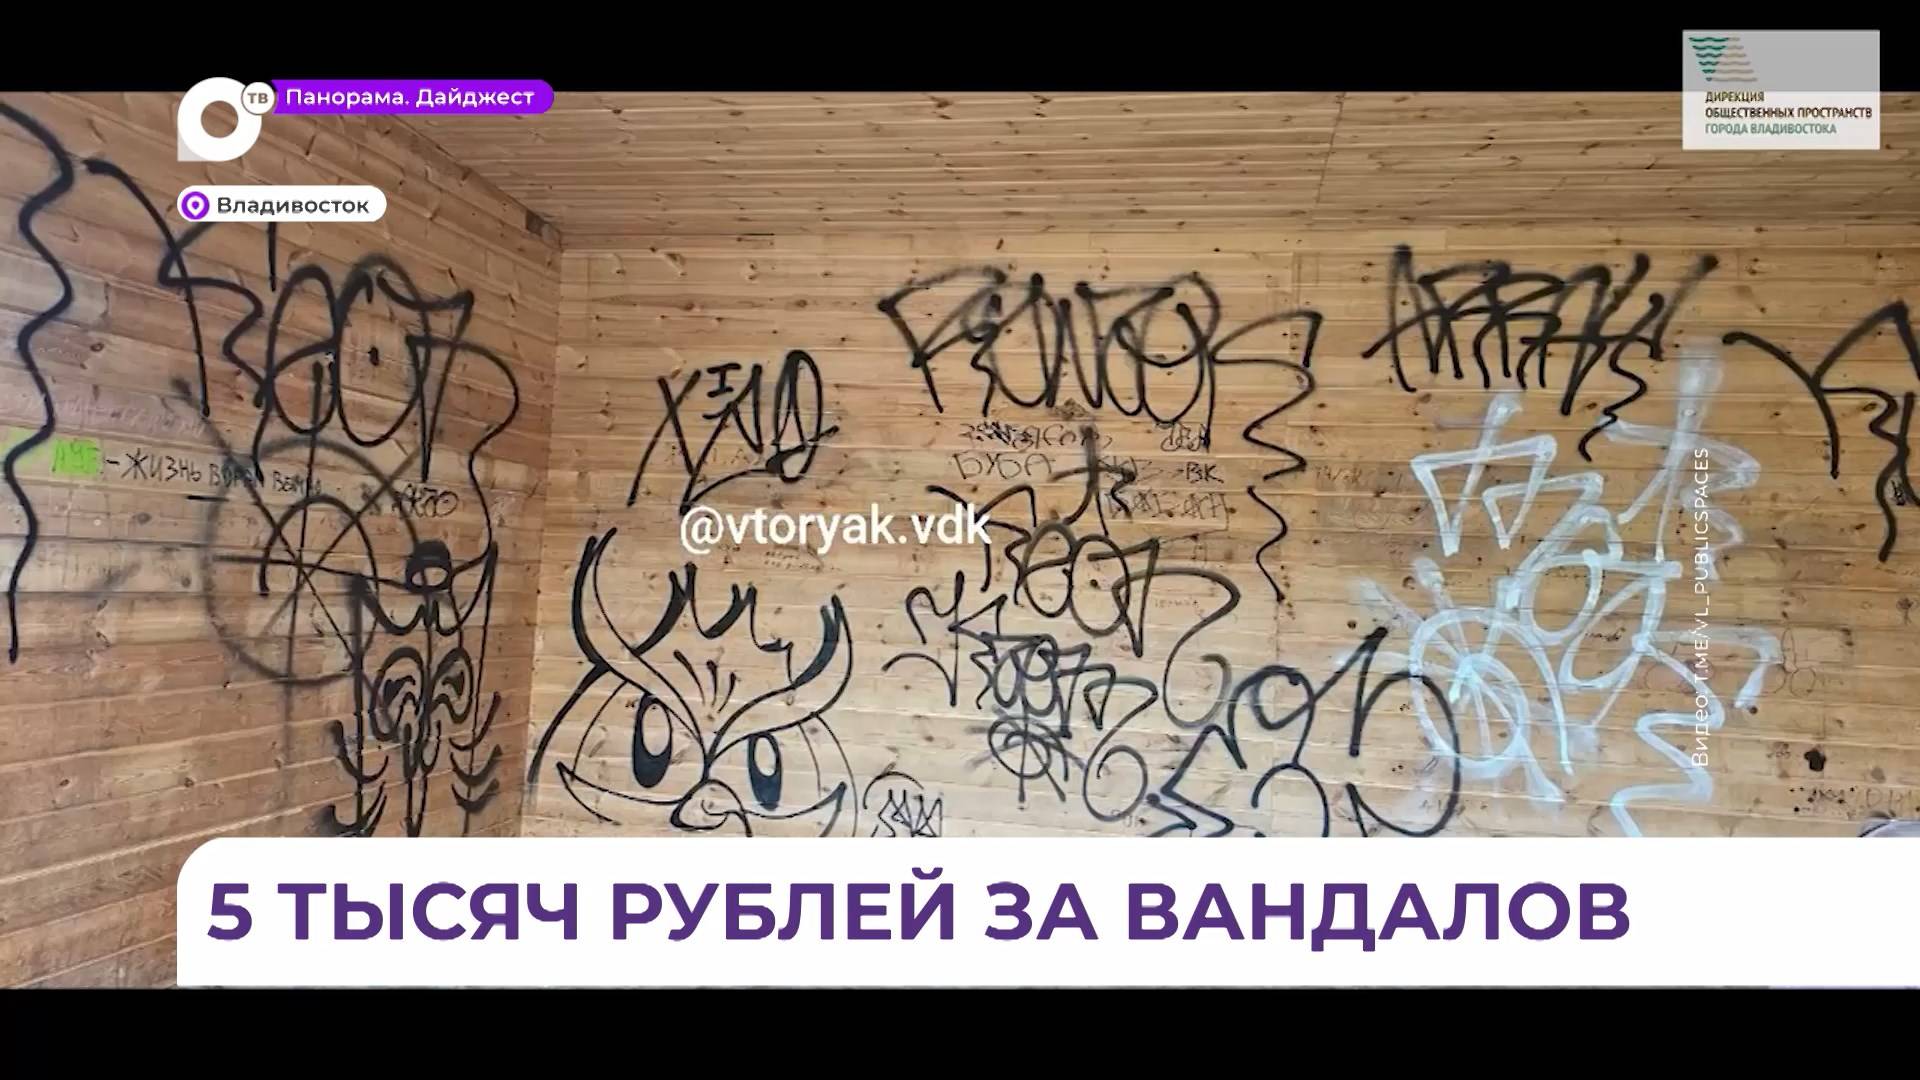 Во Владивостоке устанавливаются личности, совершившие акт вандализма в парке «Солнышко»